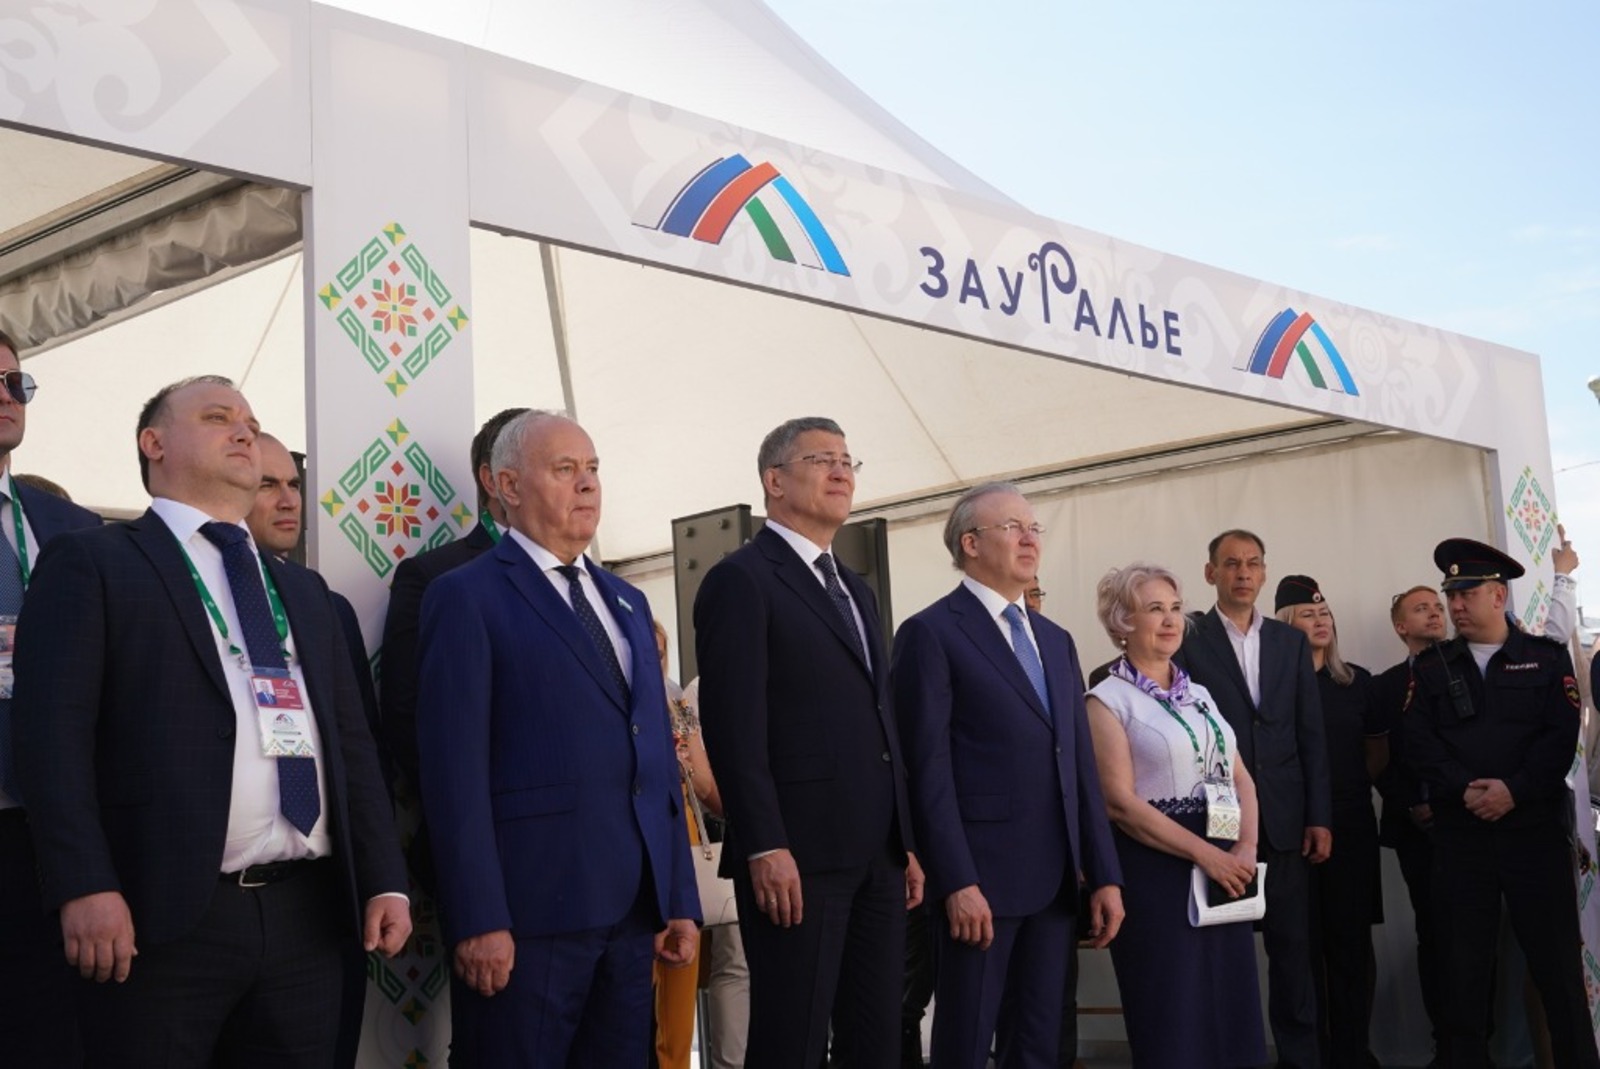 Радий Хабиров дал старт Всероссийскому инвестиционному сабантую «Зауралье» в Сибае